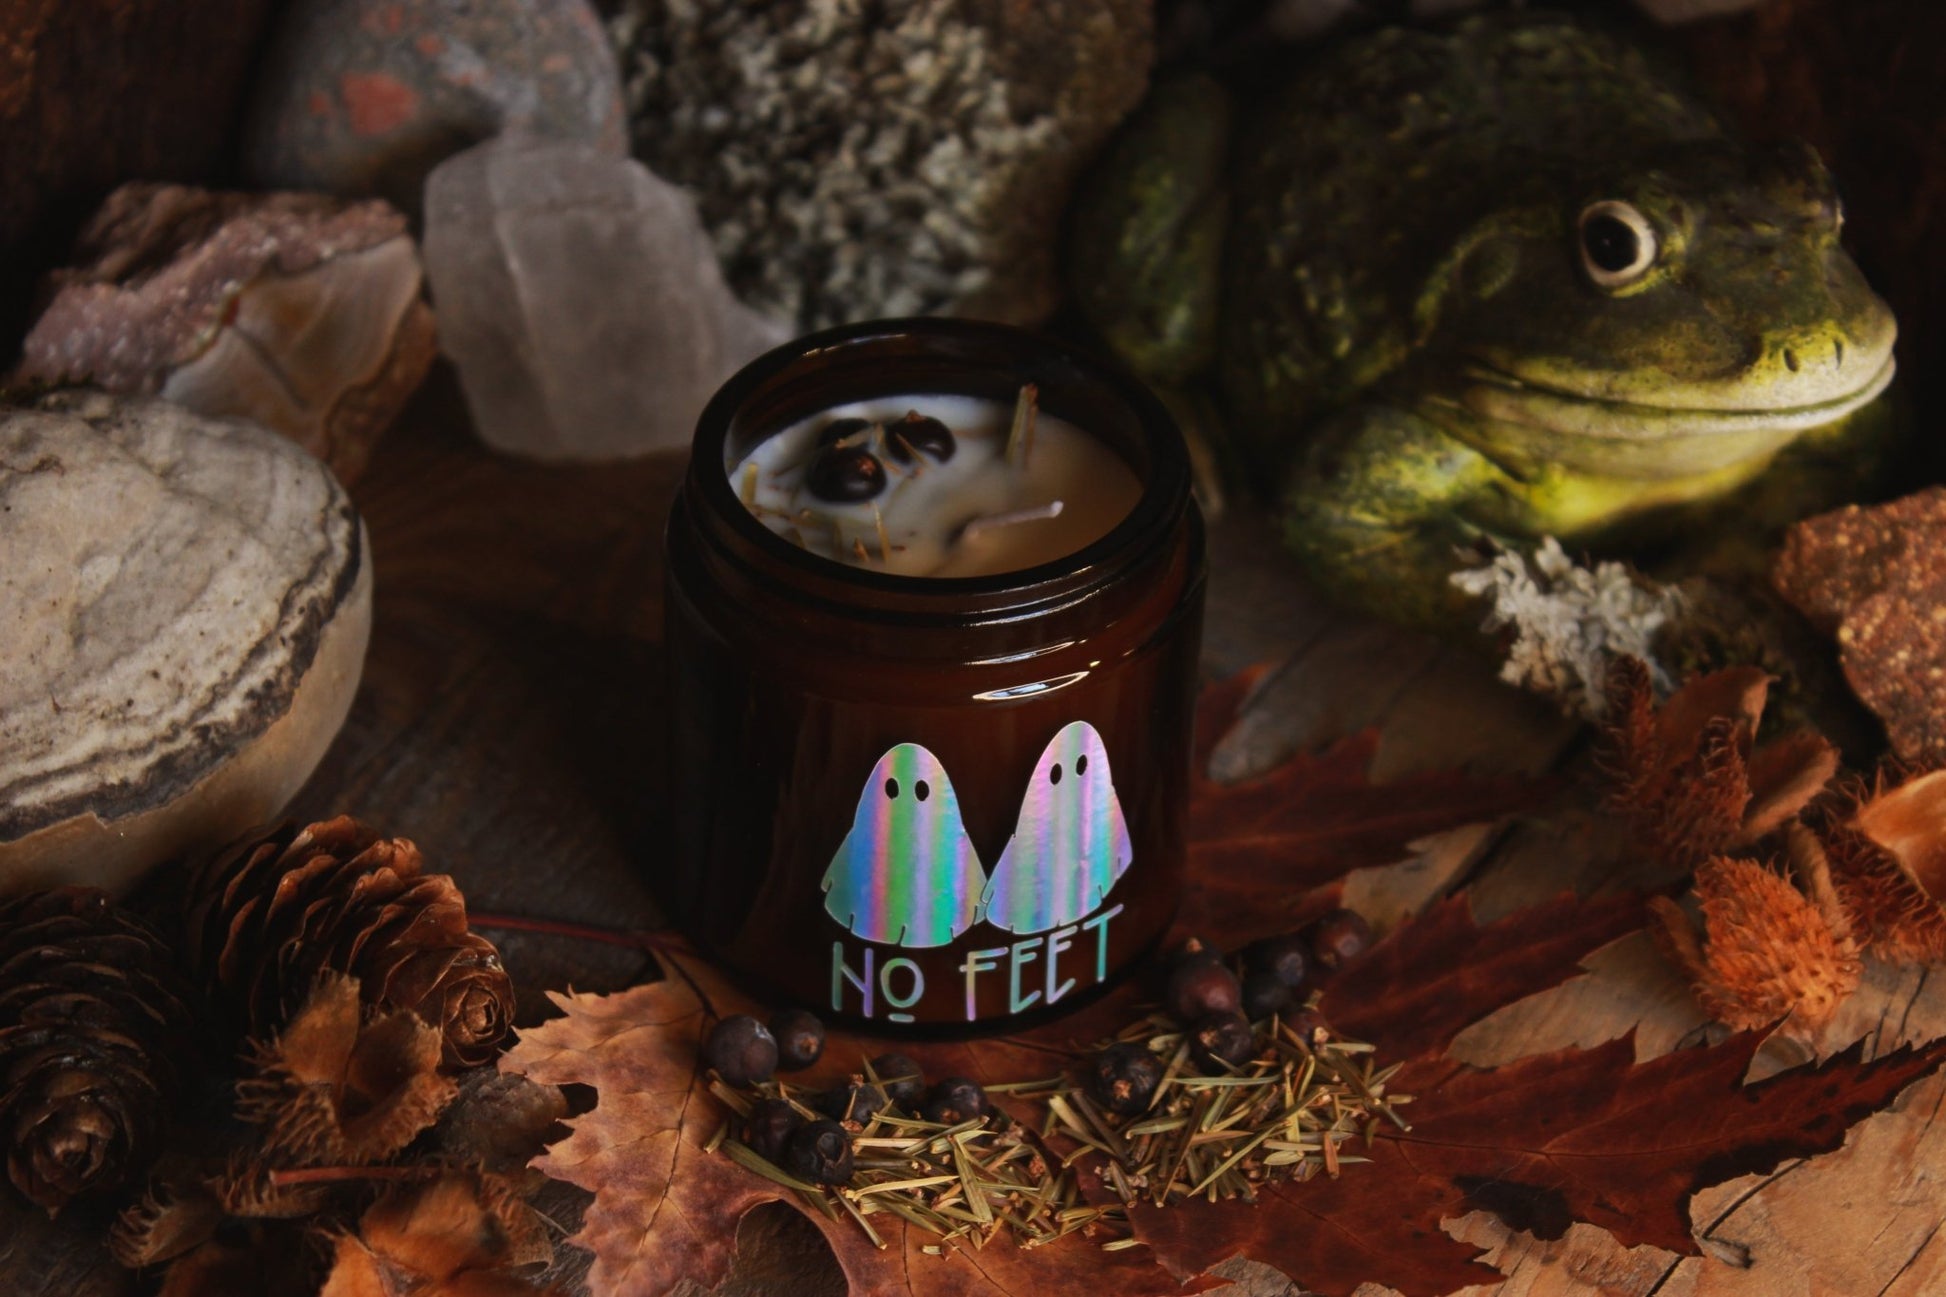 Kräuter-Kerze "No Feet" - Das Bild zeigt ein atmosphärisches Bild eines Kerzenglases mit dem Aufdruck “NO FEET” und zwei bunten Geisterbildern, umgeben von herbstlichen Elementen wie trockenen Blättern und Tannenzapfen.